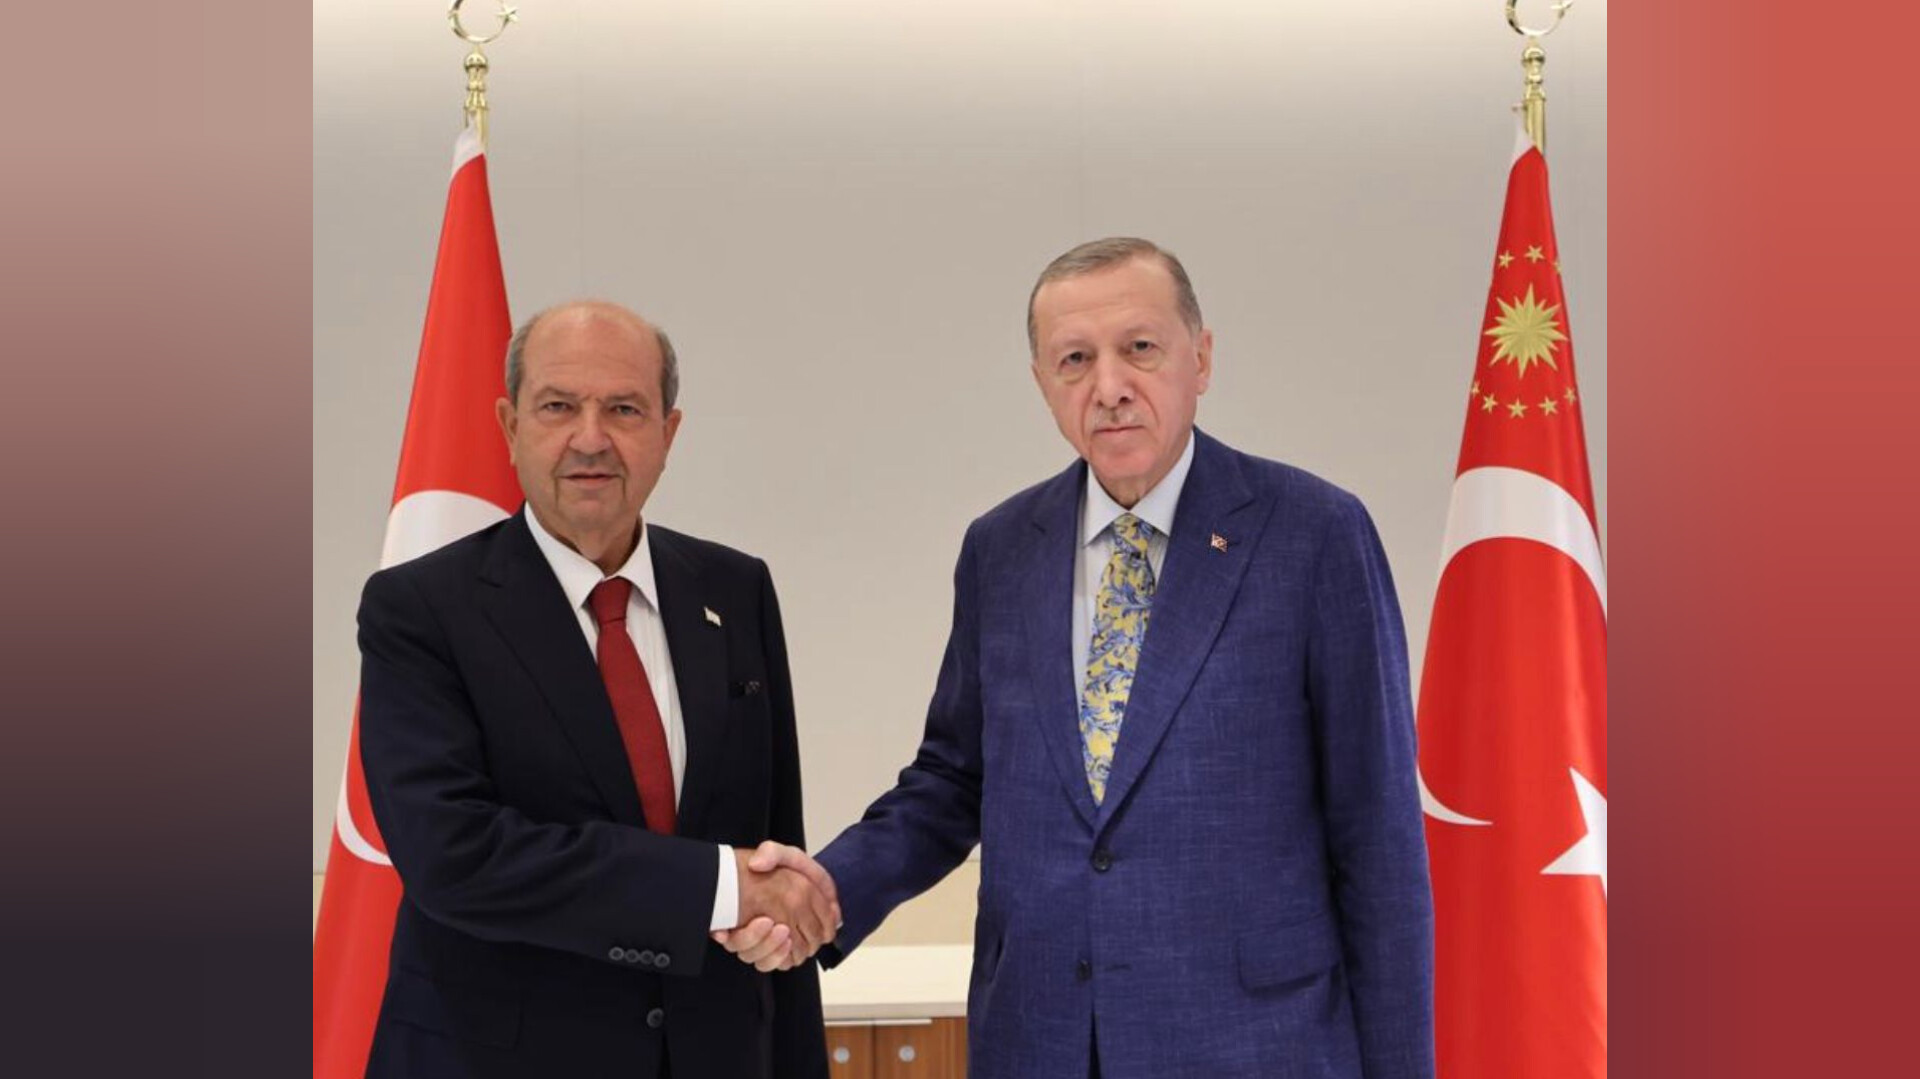 Tatar, TC Cumhurbaşkanı Erdoğan ile görüştü